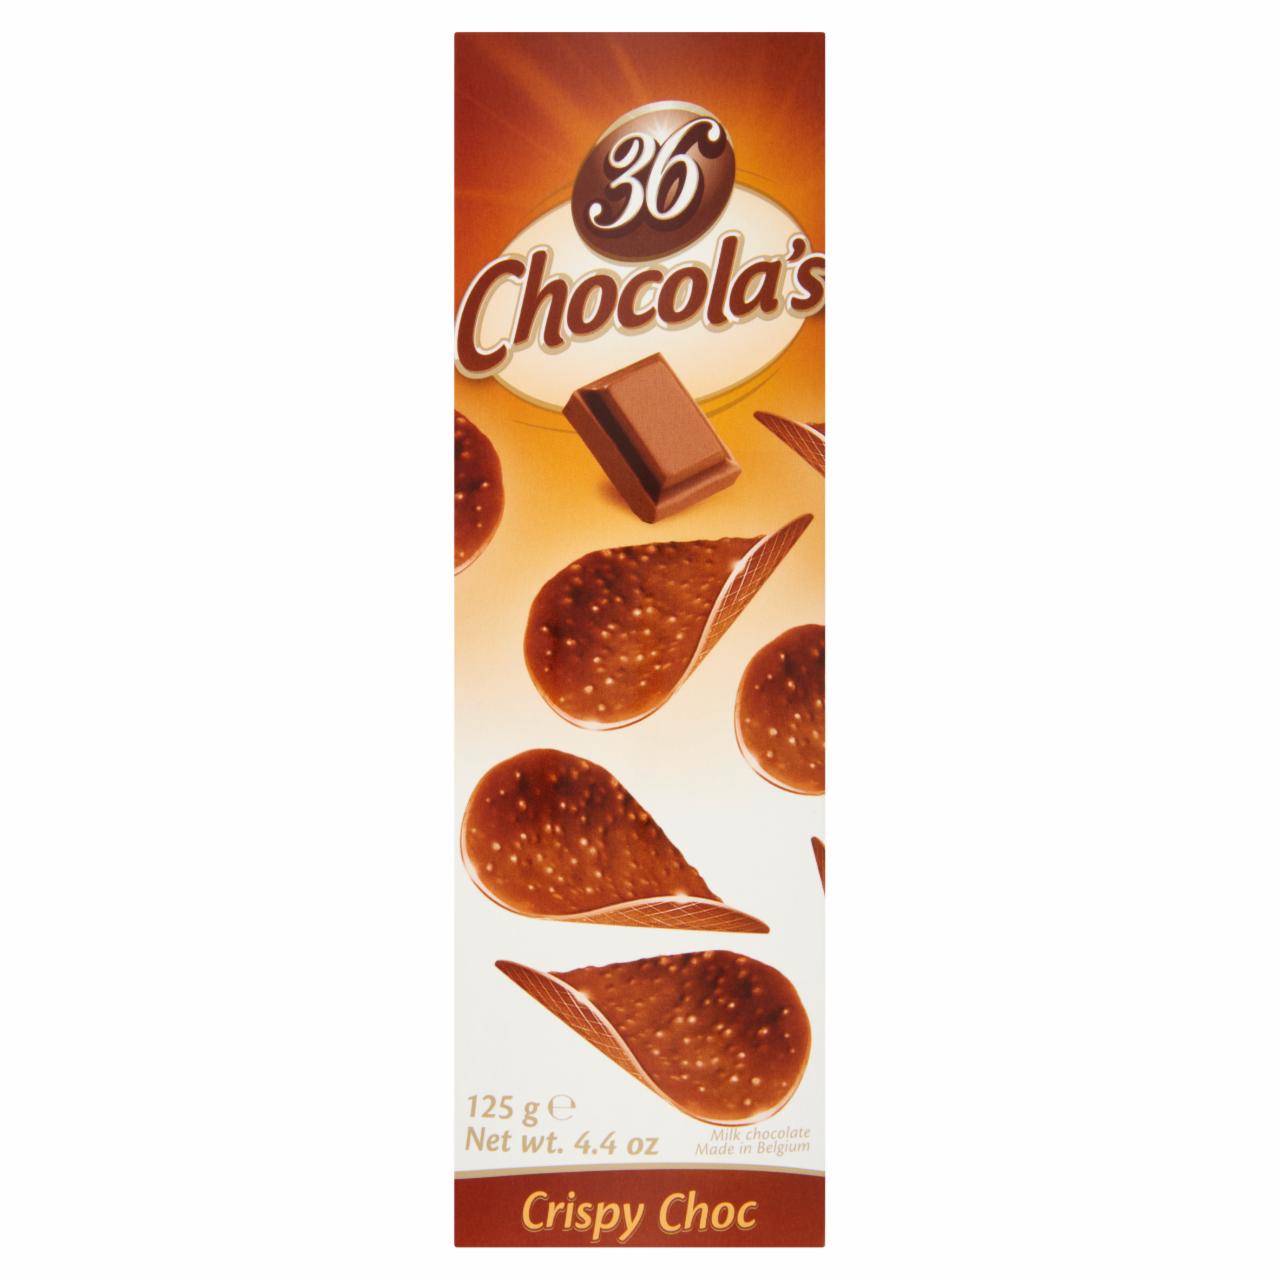 Képek - Hamlet 36 Chocola's Crispy Choc tejcsokoládé puffasztott rizzsel 125 g